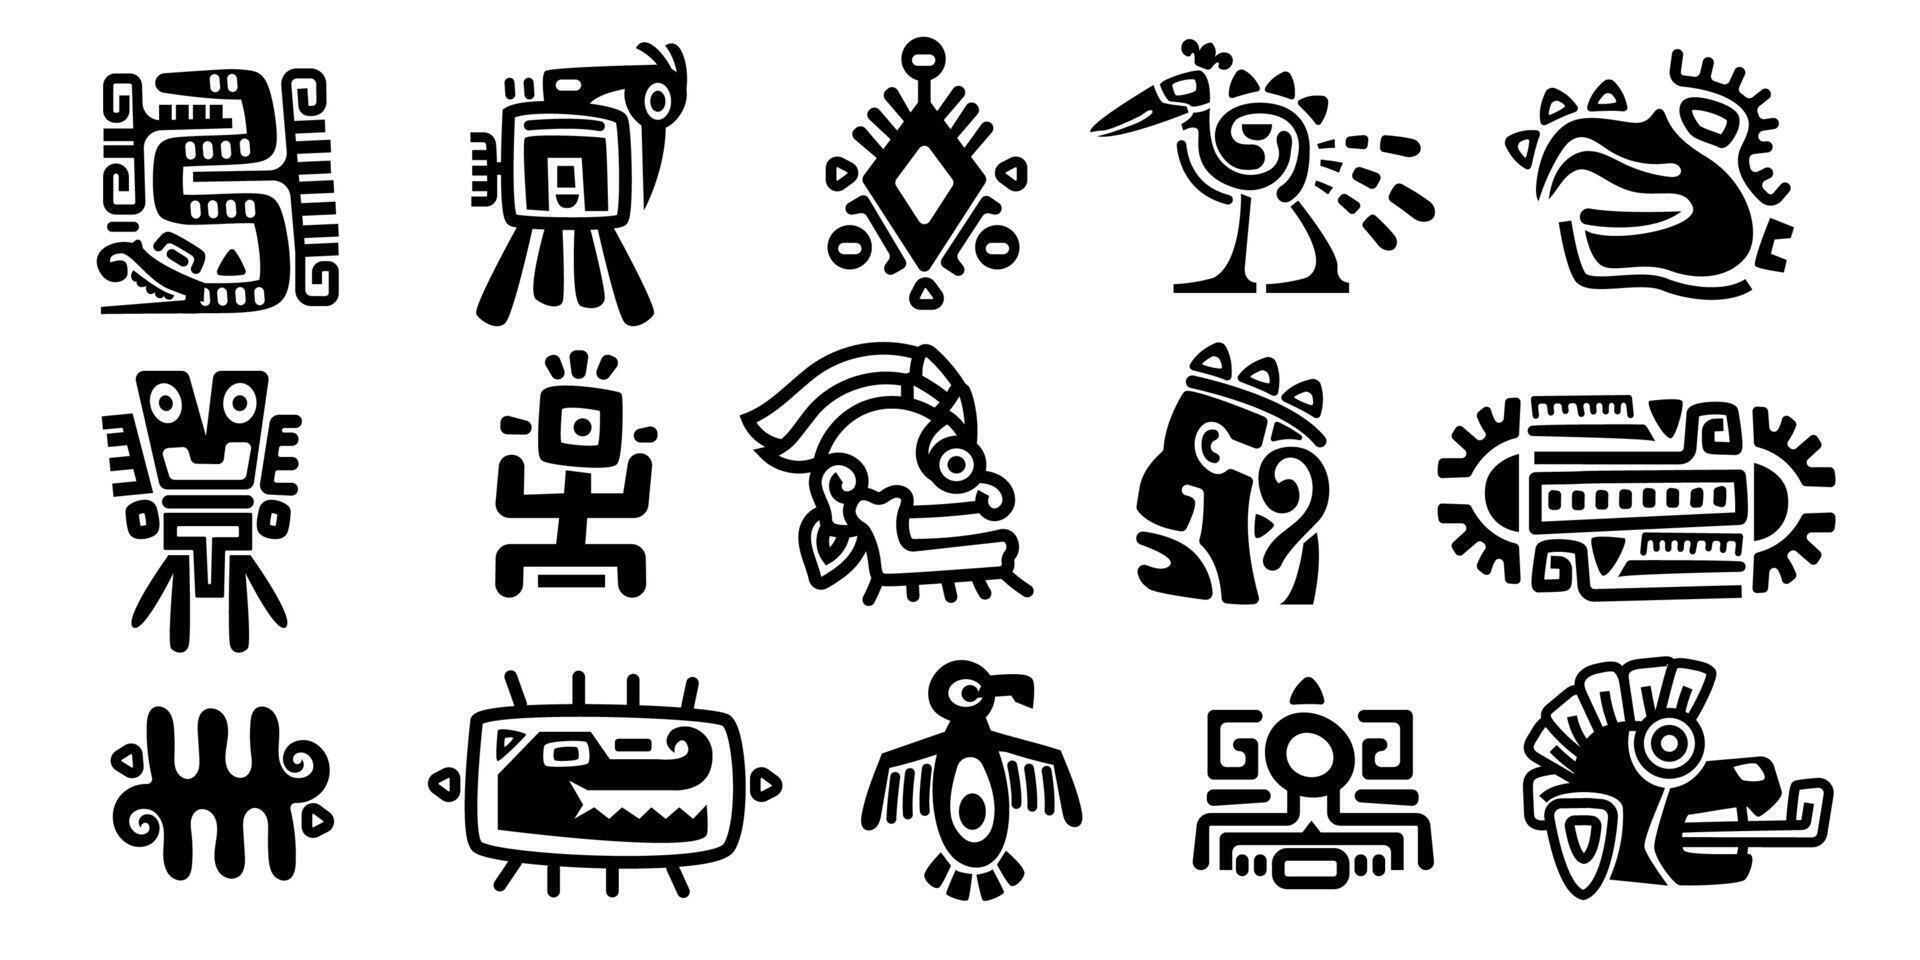 maia símbolos. antigo civilização religioso totem personagens, monocromático ícones do mexicano indiano asteca inca indígena. vetor isolado conjunto